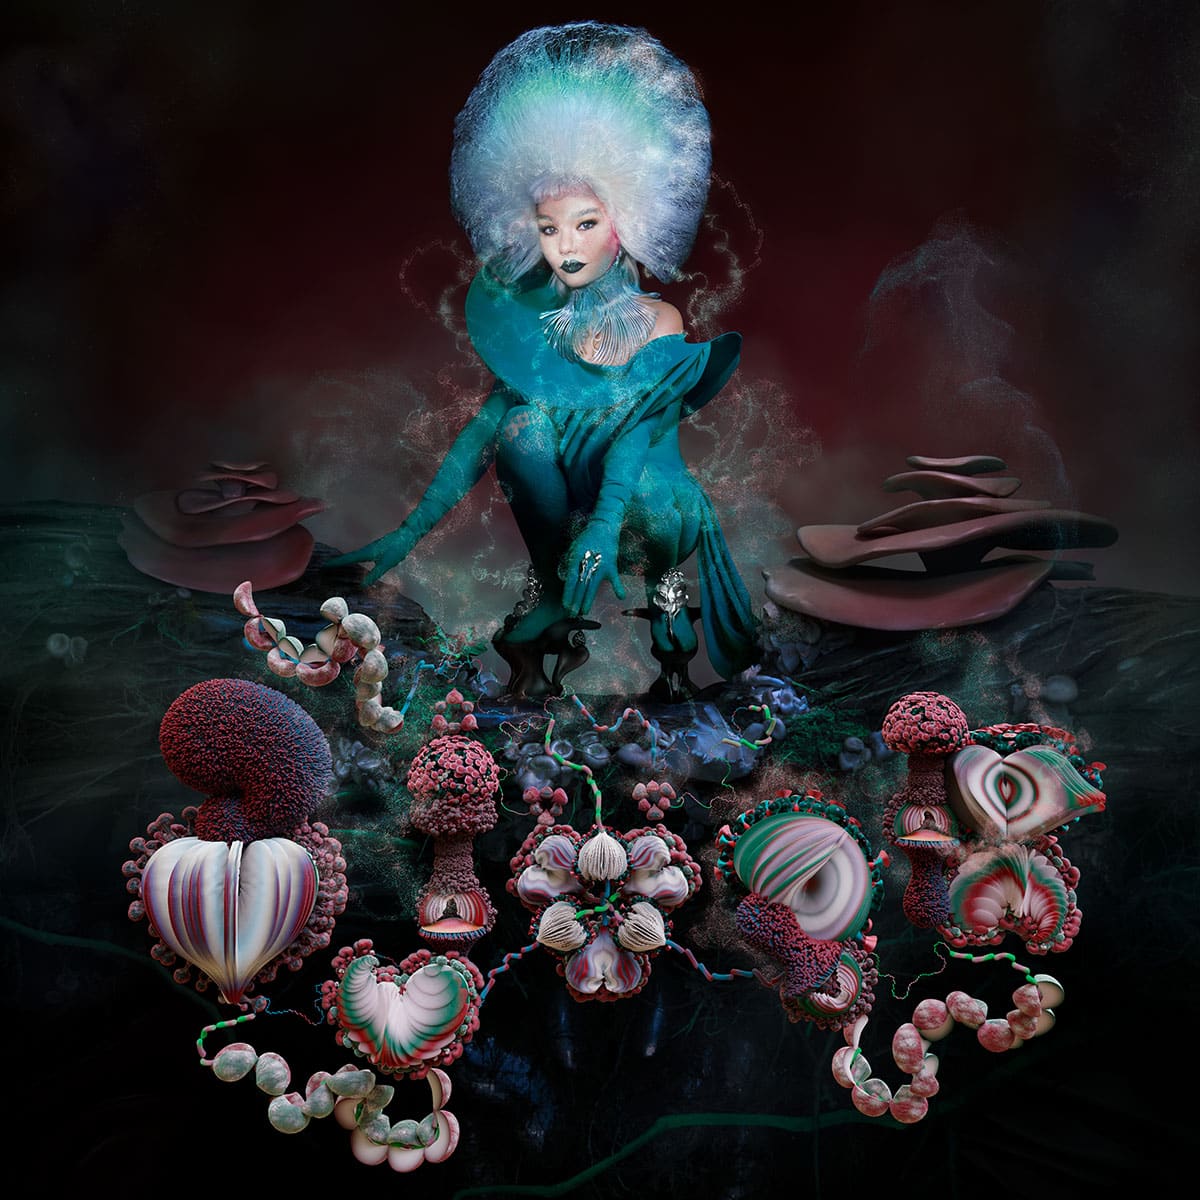 Die Künstlerin Björk, mit bläulich gefärbten Haaren und unterirdische Pilze und Flora in 3d visualisiert